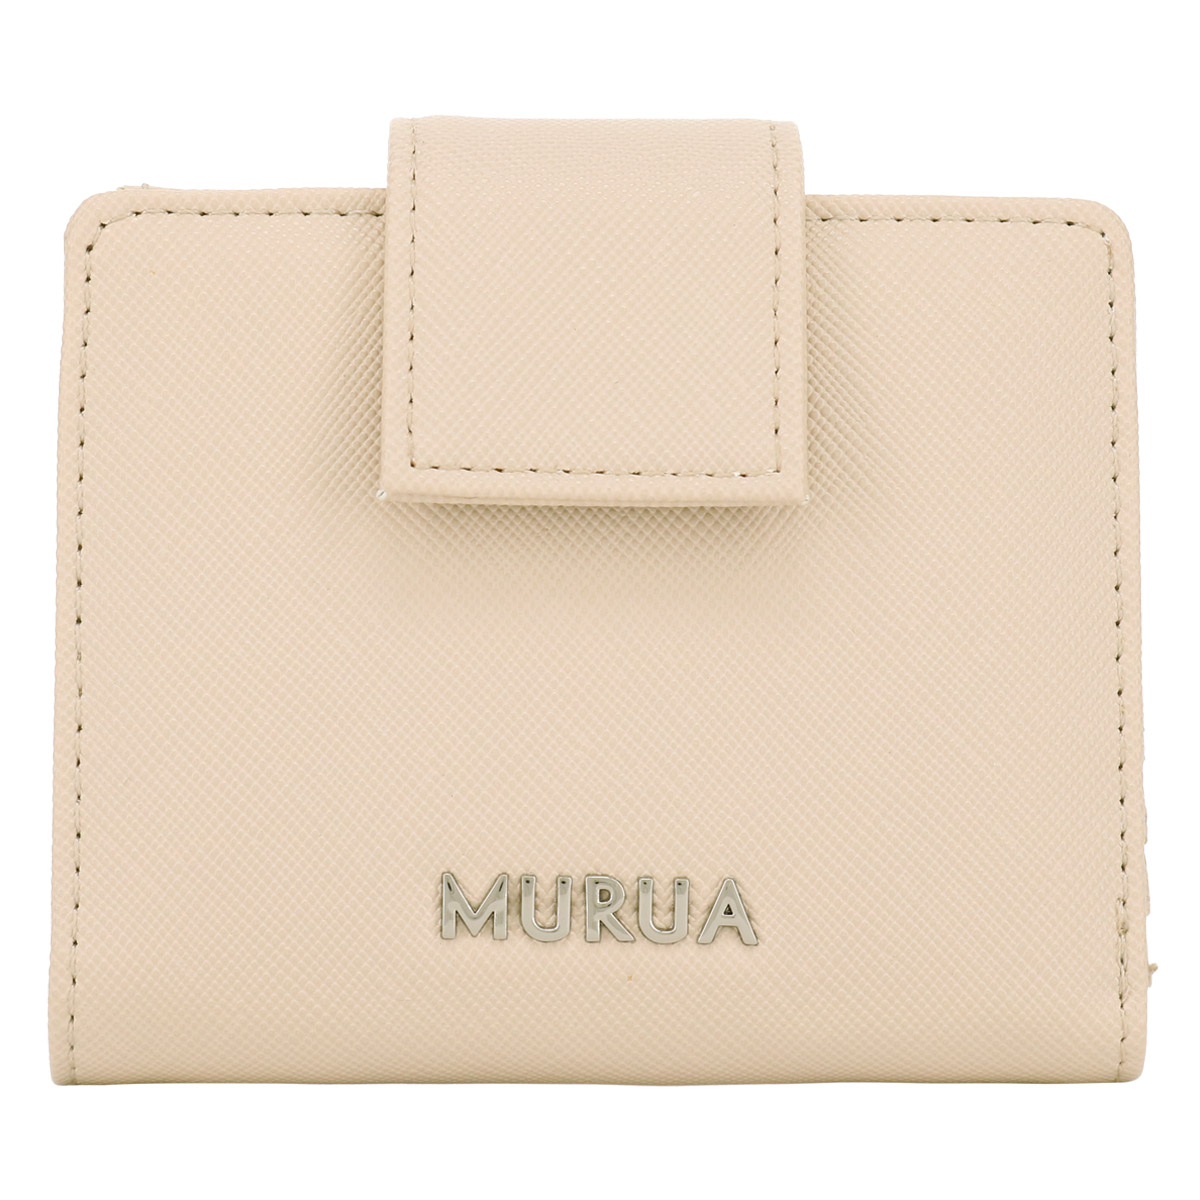 ムルーア 二つ折り財布 ミニ財布 レディース プレイン MR-W1143 MURUA